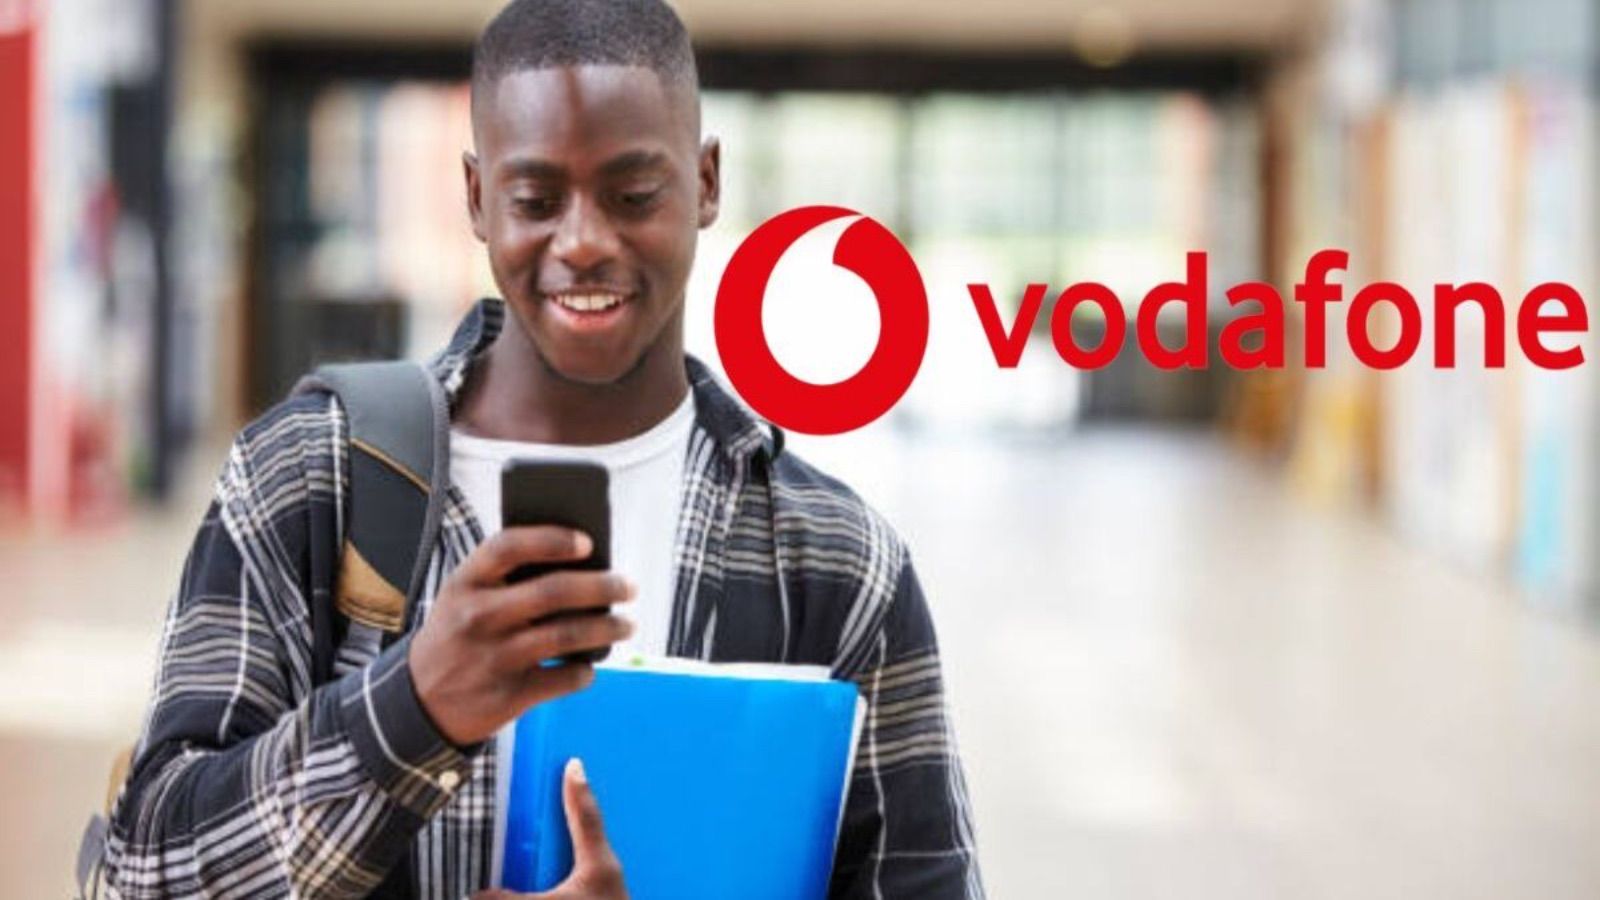 Vodafone sorprende TIM con un'offerta con GIGA ILLIMITATI